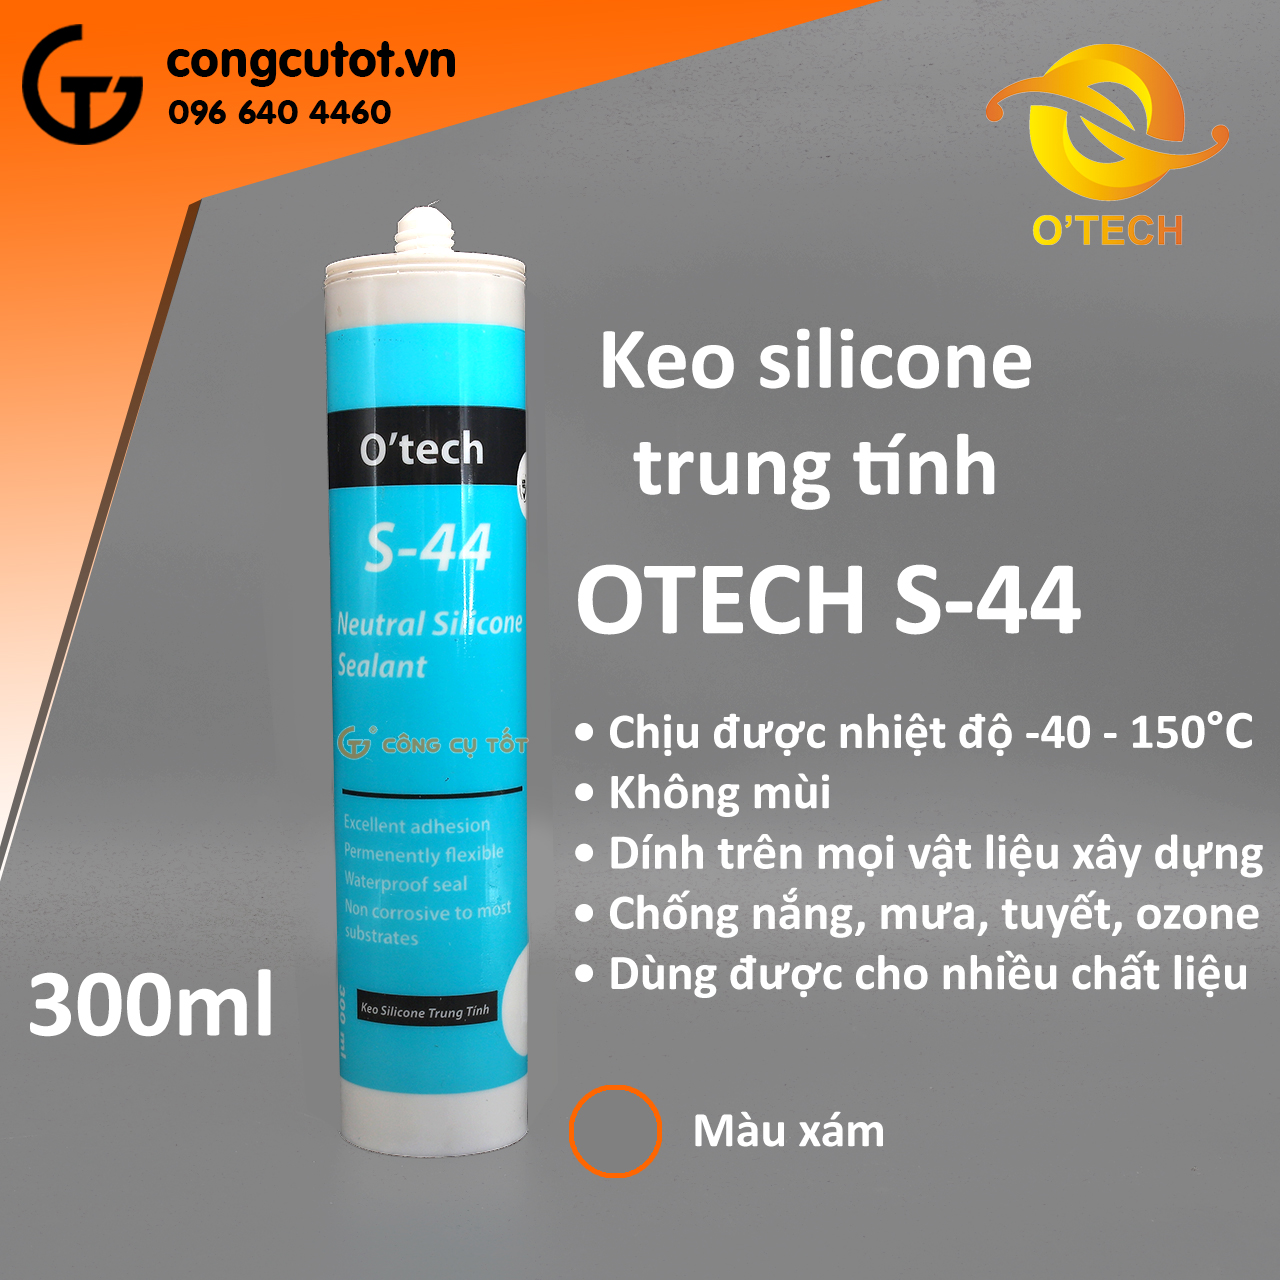 Keo silicone trung tính 300ml OTECH S-44 màu xám